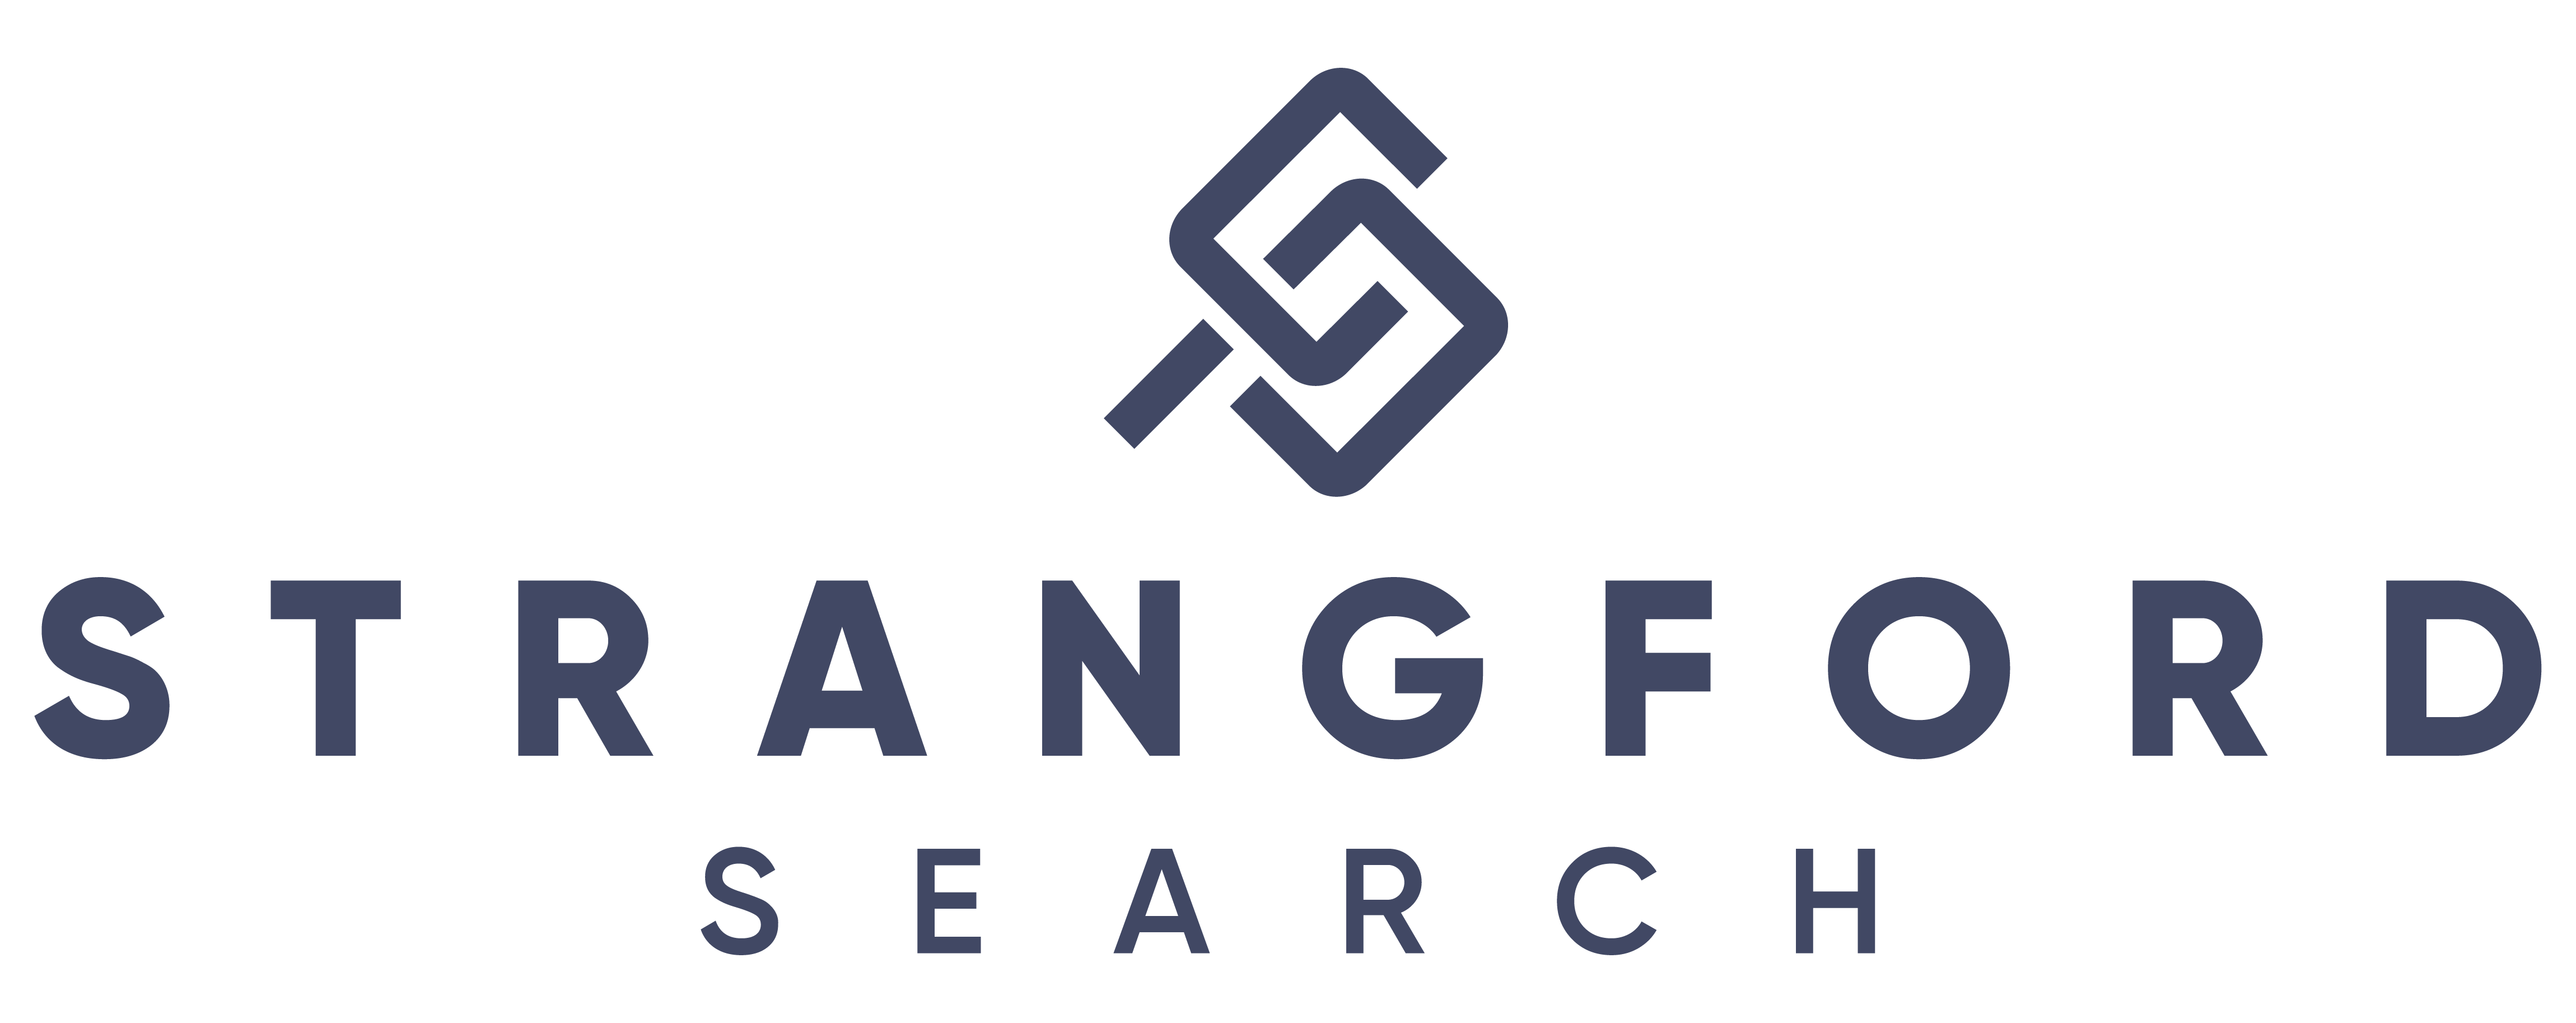 Strangford Search